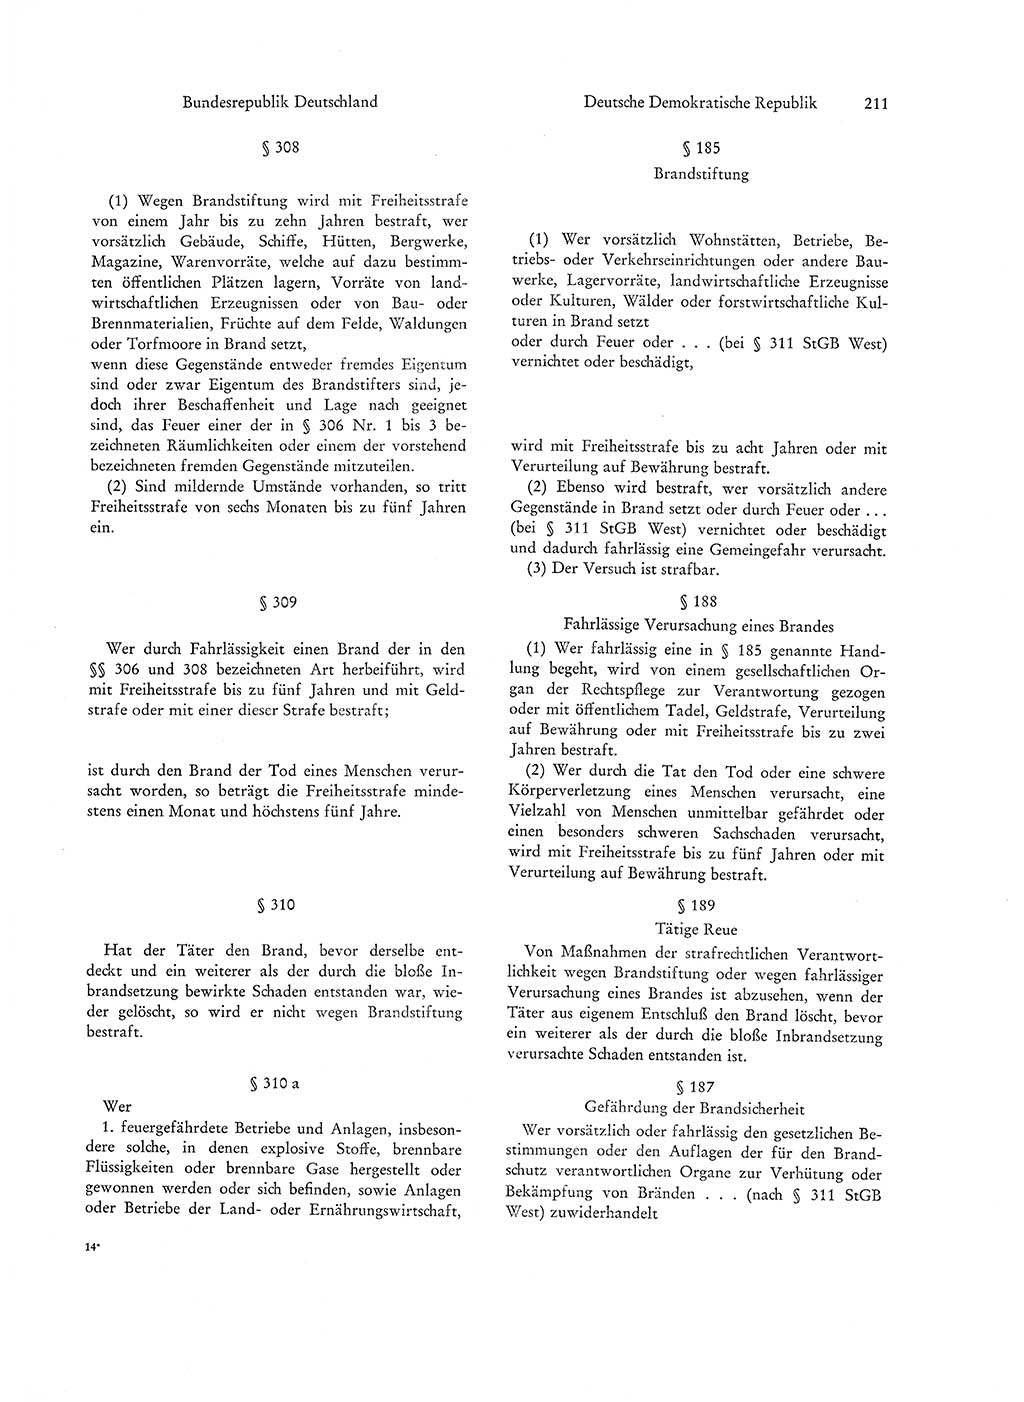 Strafgesetzgebung in Deutschland [Bundesrepublik Deutschland (BRD) und Deutsche Demokratische Republik (DDR)] 1972, Seite 211 (Str.-Ges. Dtl. StGB BRD DDR 1972, S. 211)